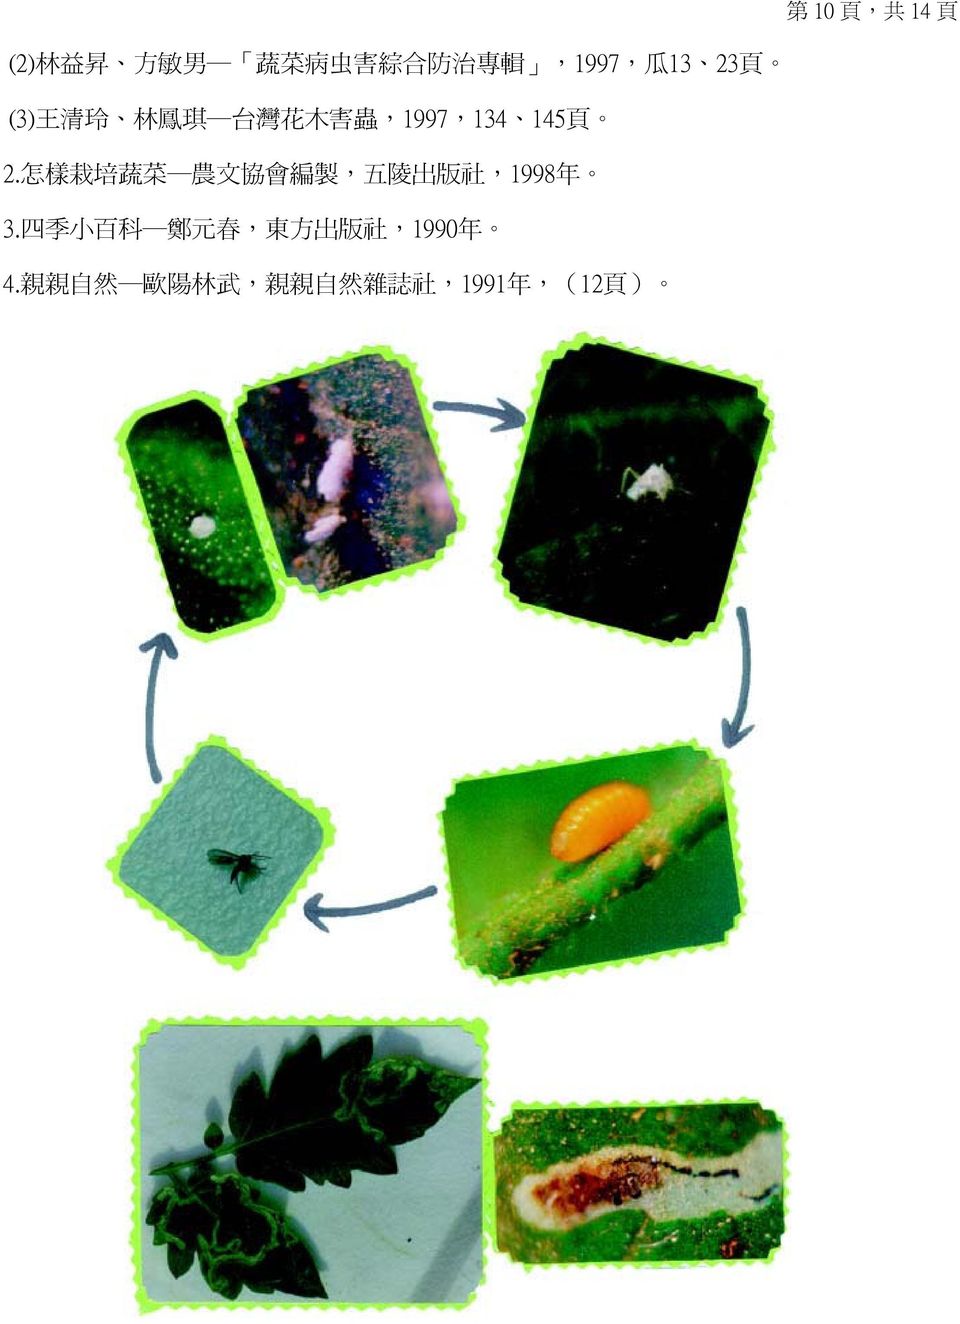 怎 樣 栽 培 蔬 菜 農 文 協 會 編 製, 五 陵 出 版 社,1998 年 3.